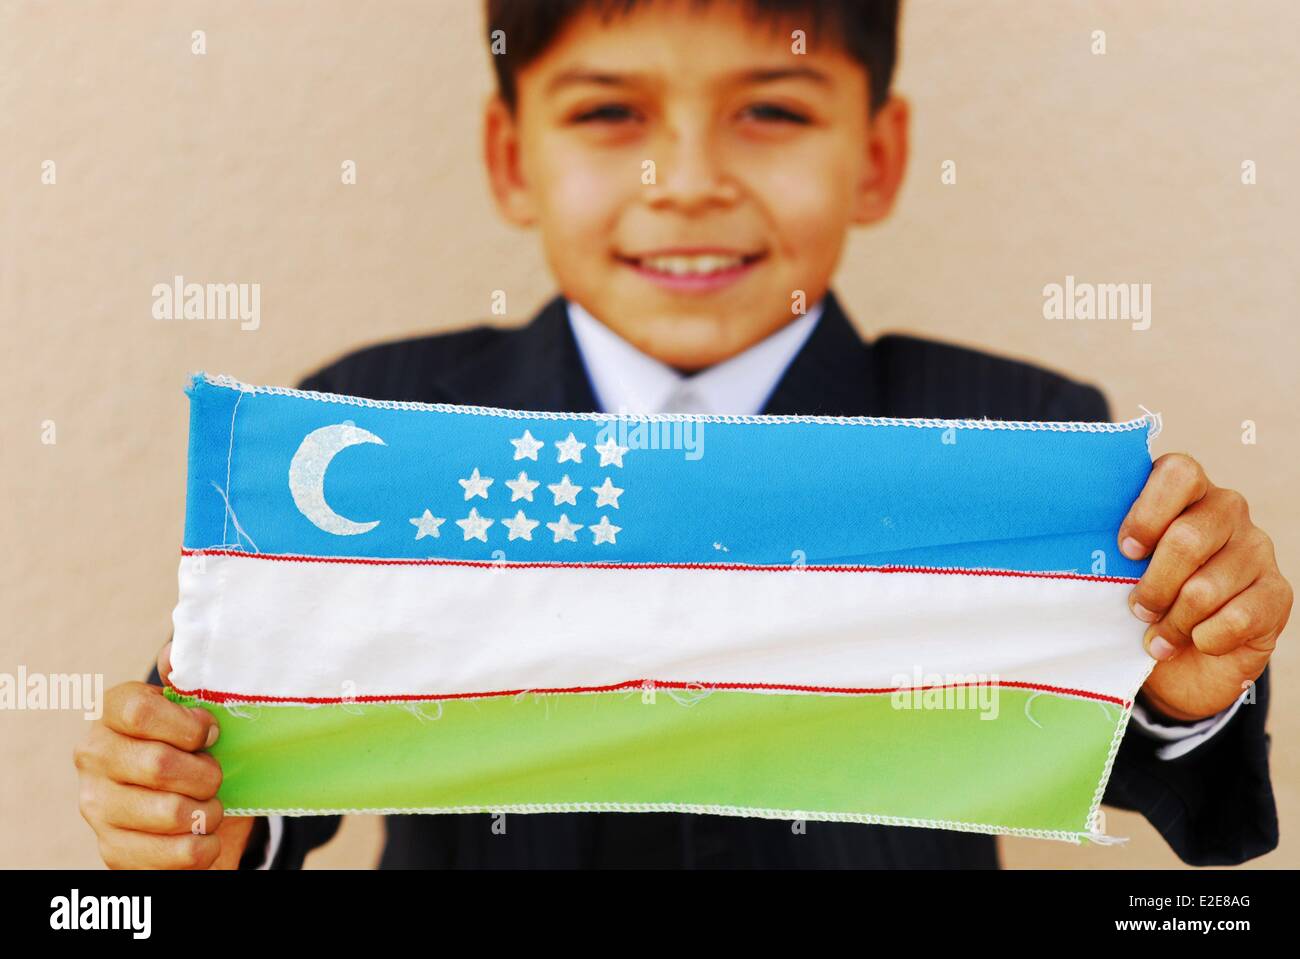 Uzbekistan, Fergana, close-up ritratto di un ragazzo sorridente bandiera di contenimento Foto Stock